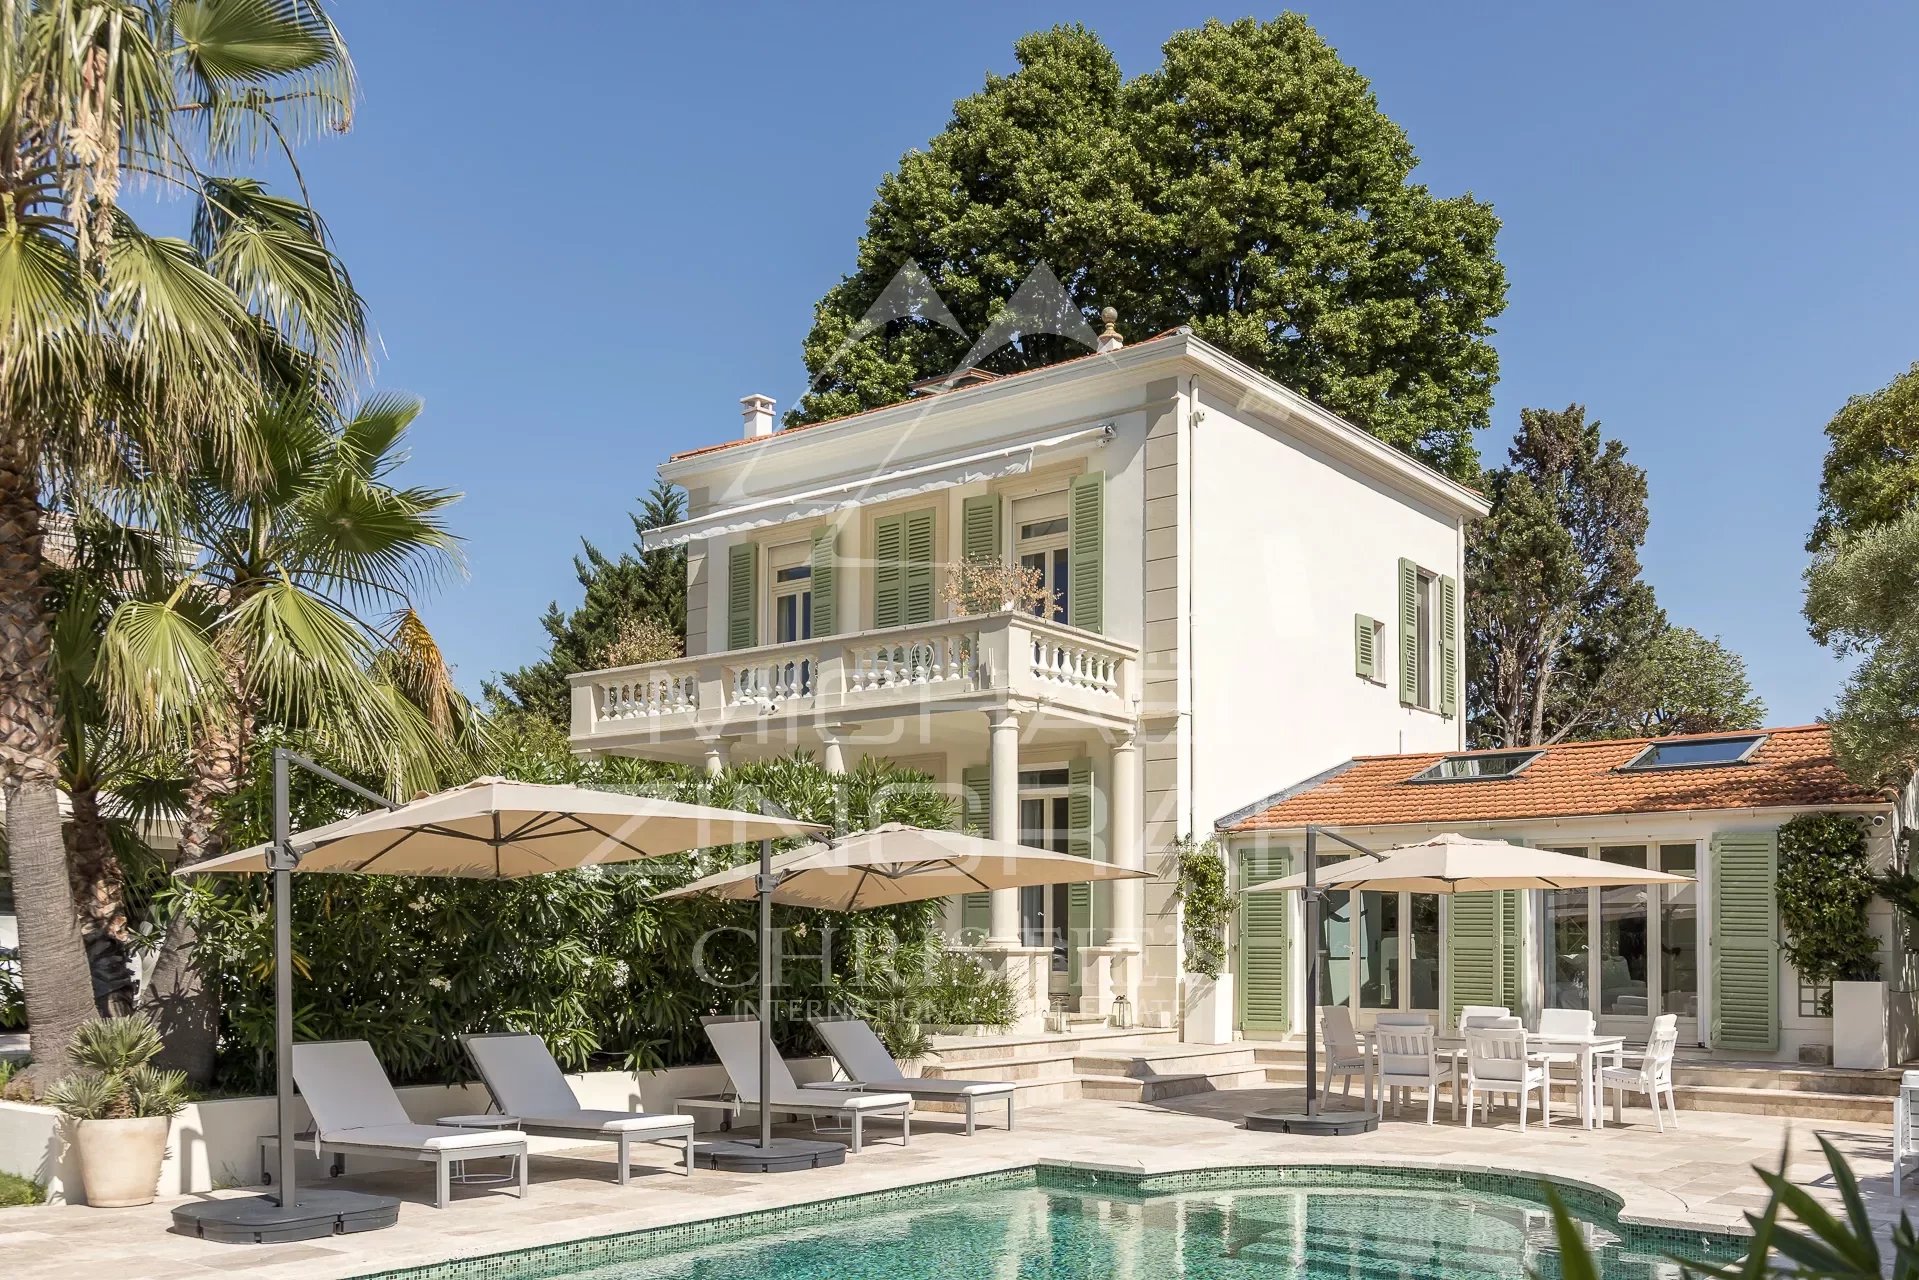 EXCLUSIVITE -Splendide Villa Bourgeoise au Calme sur  - Cap d'Antibes